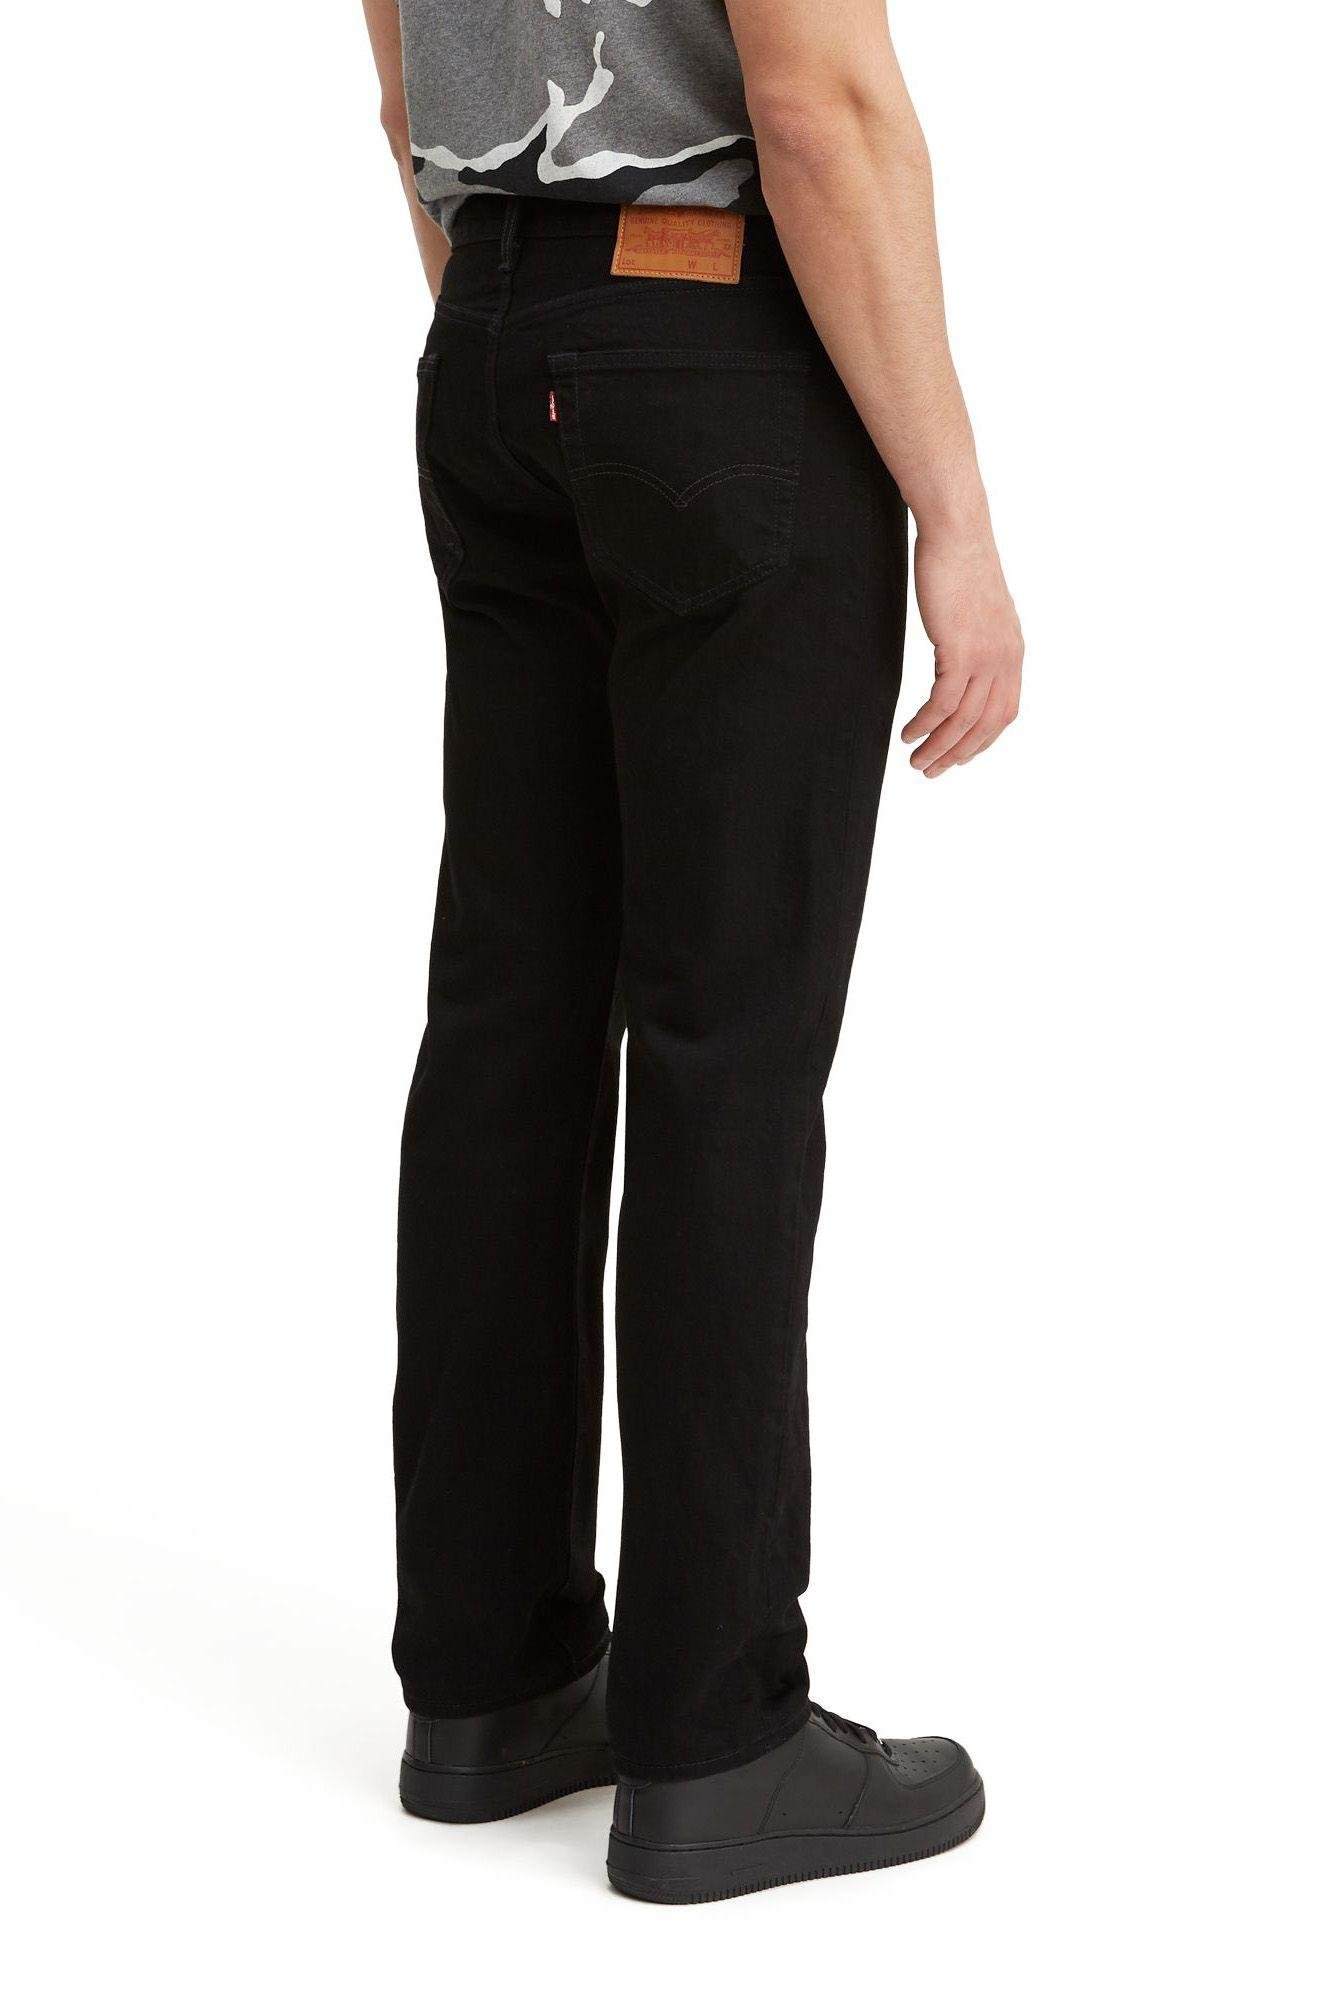 Levi's Denim 501 '93 Straight Jeans in Black for Men - Lyst